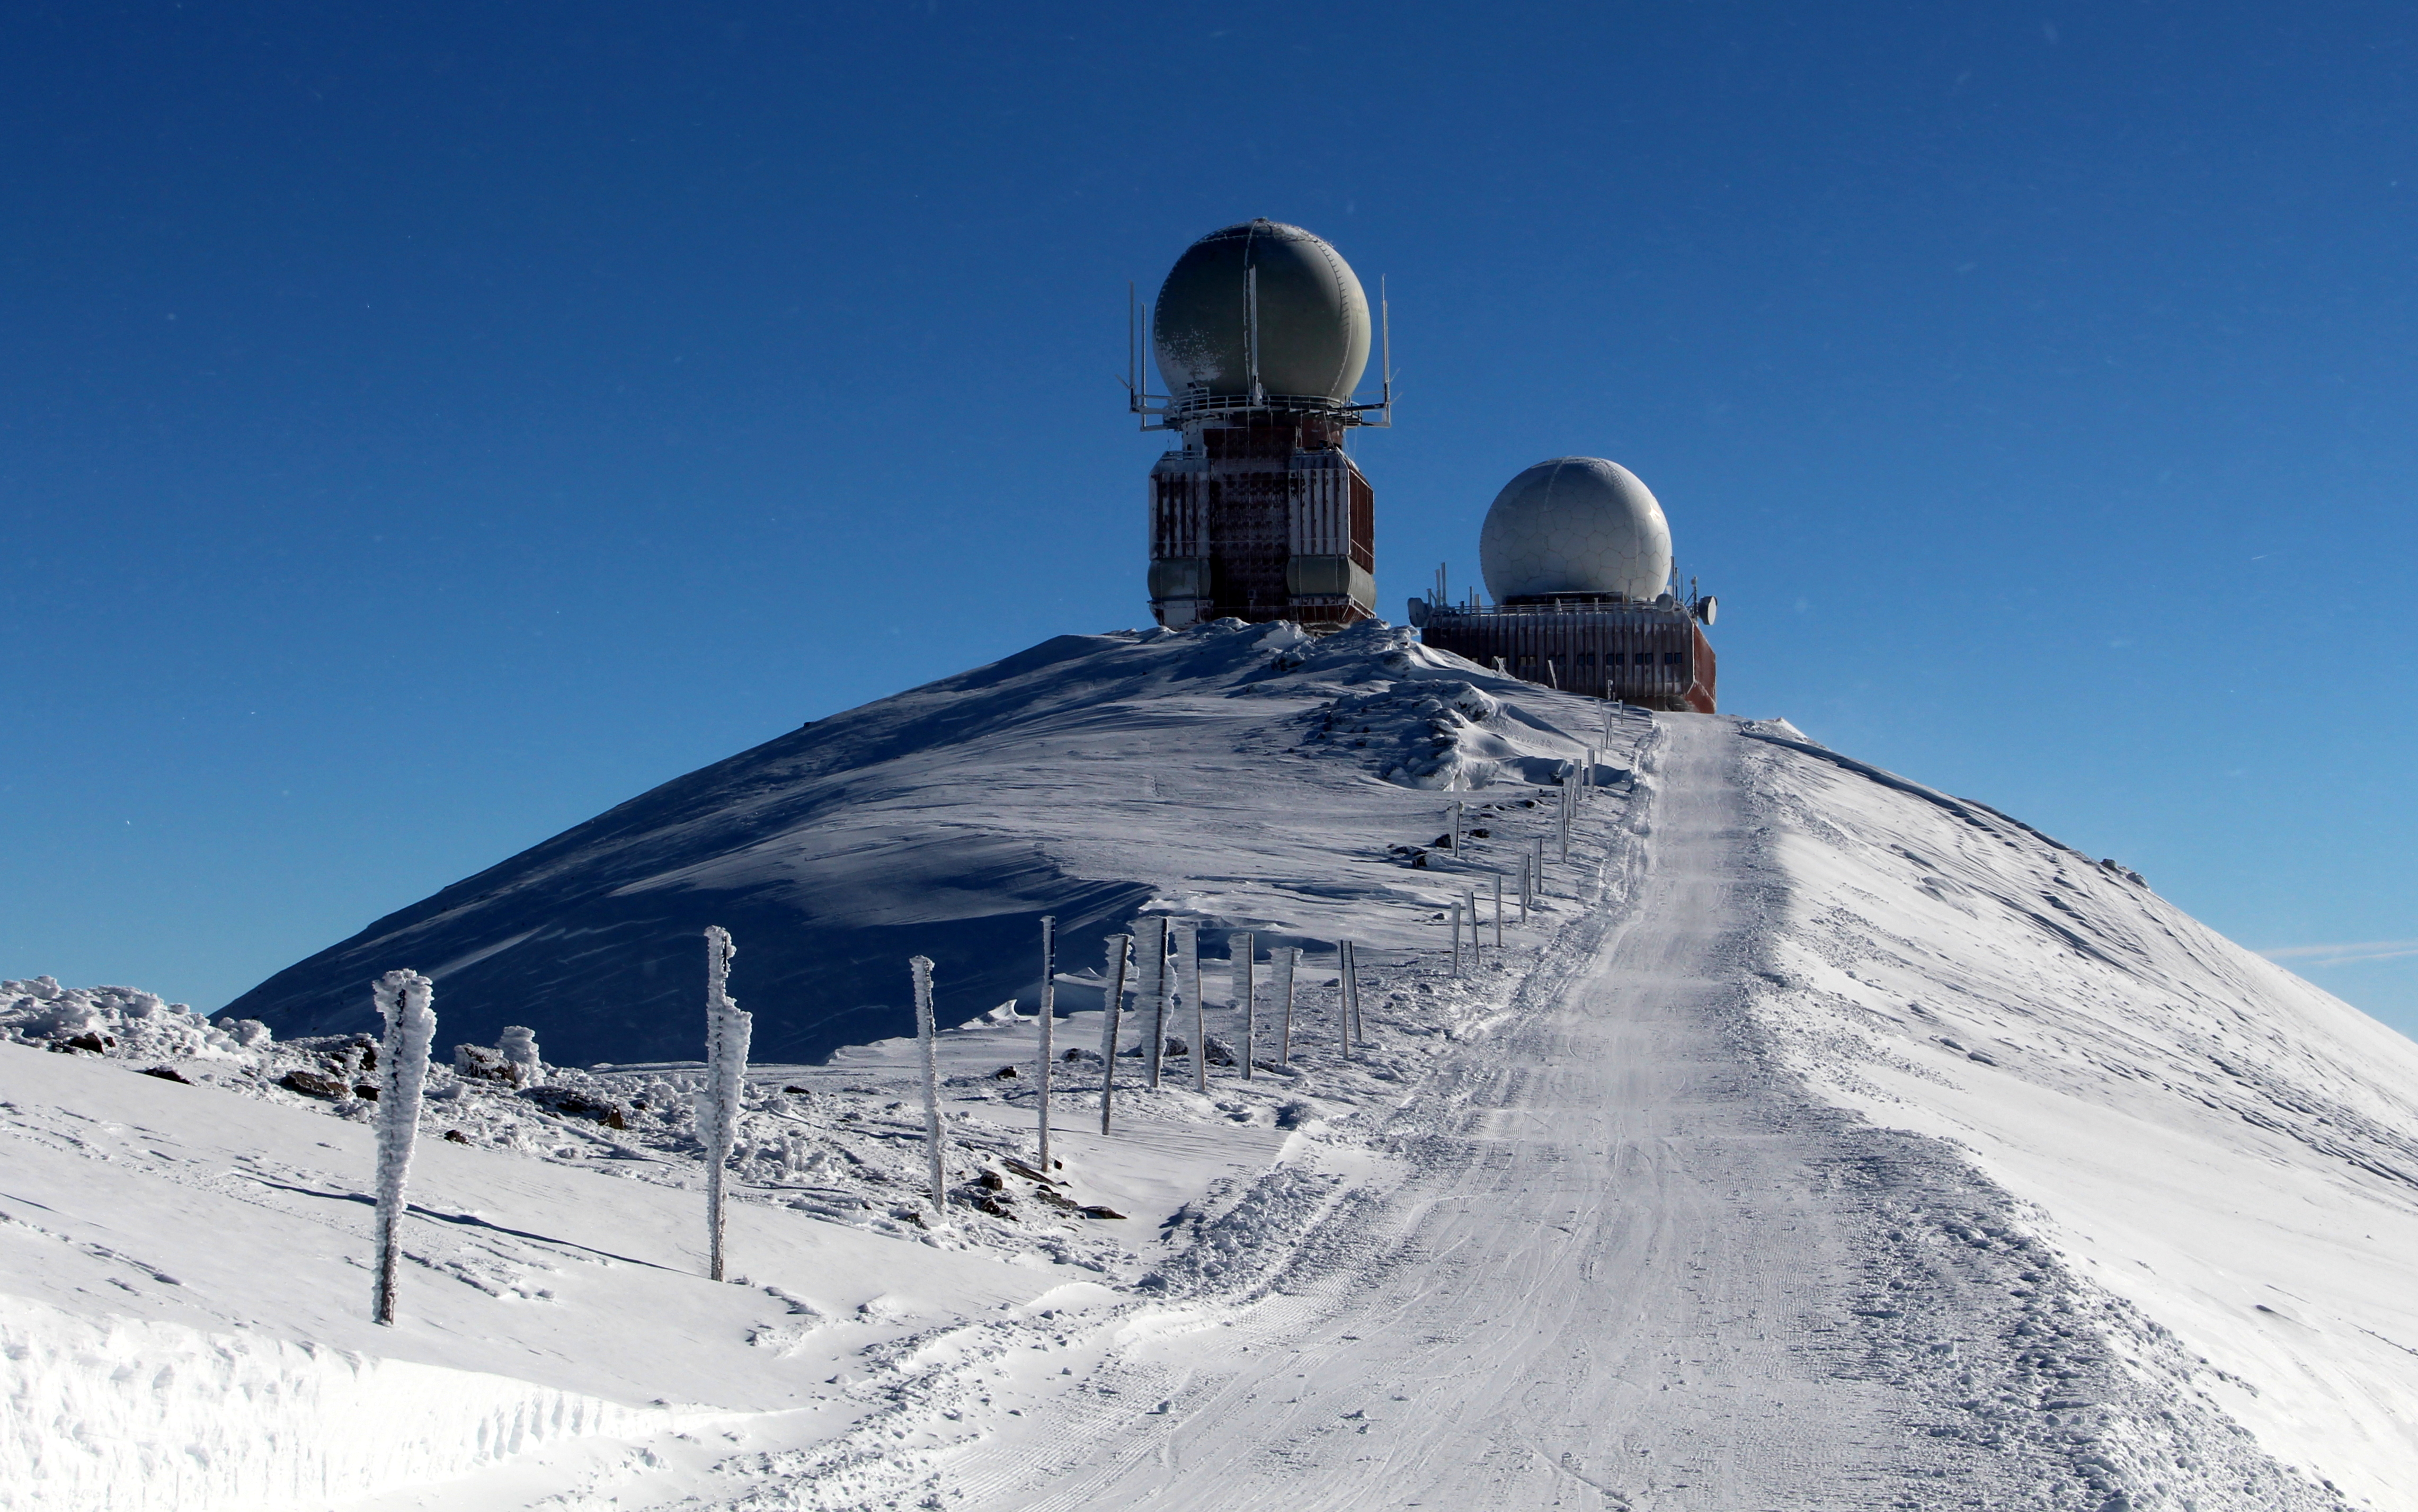 Blick zum restlichen Weg in Richtung Großer Speikkogel und den beiden Radarstationen am Gipfel.